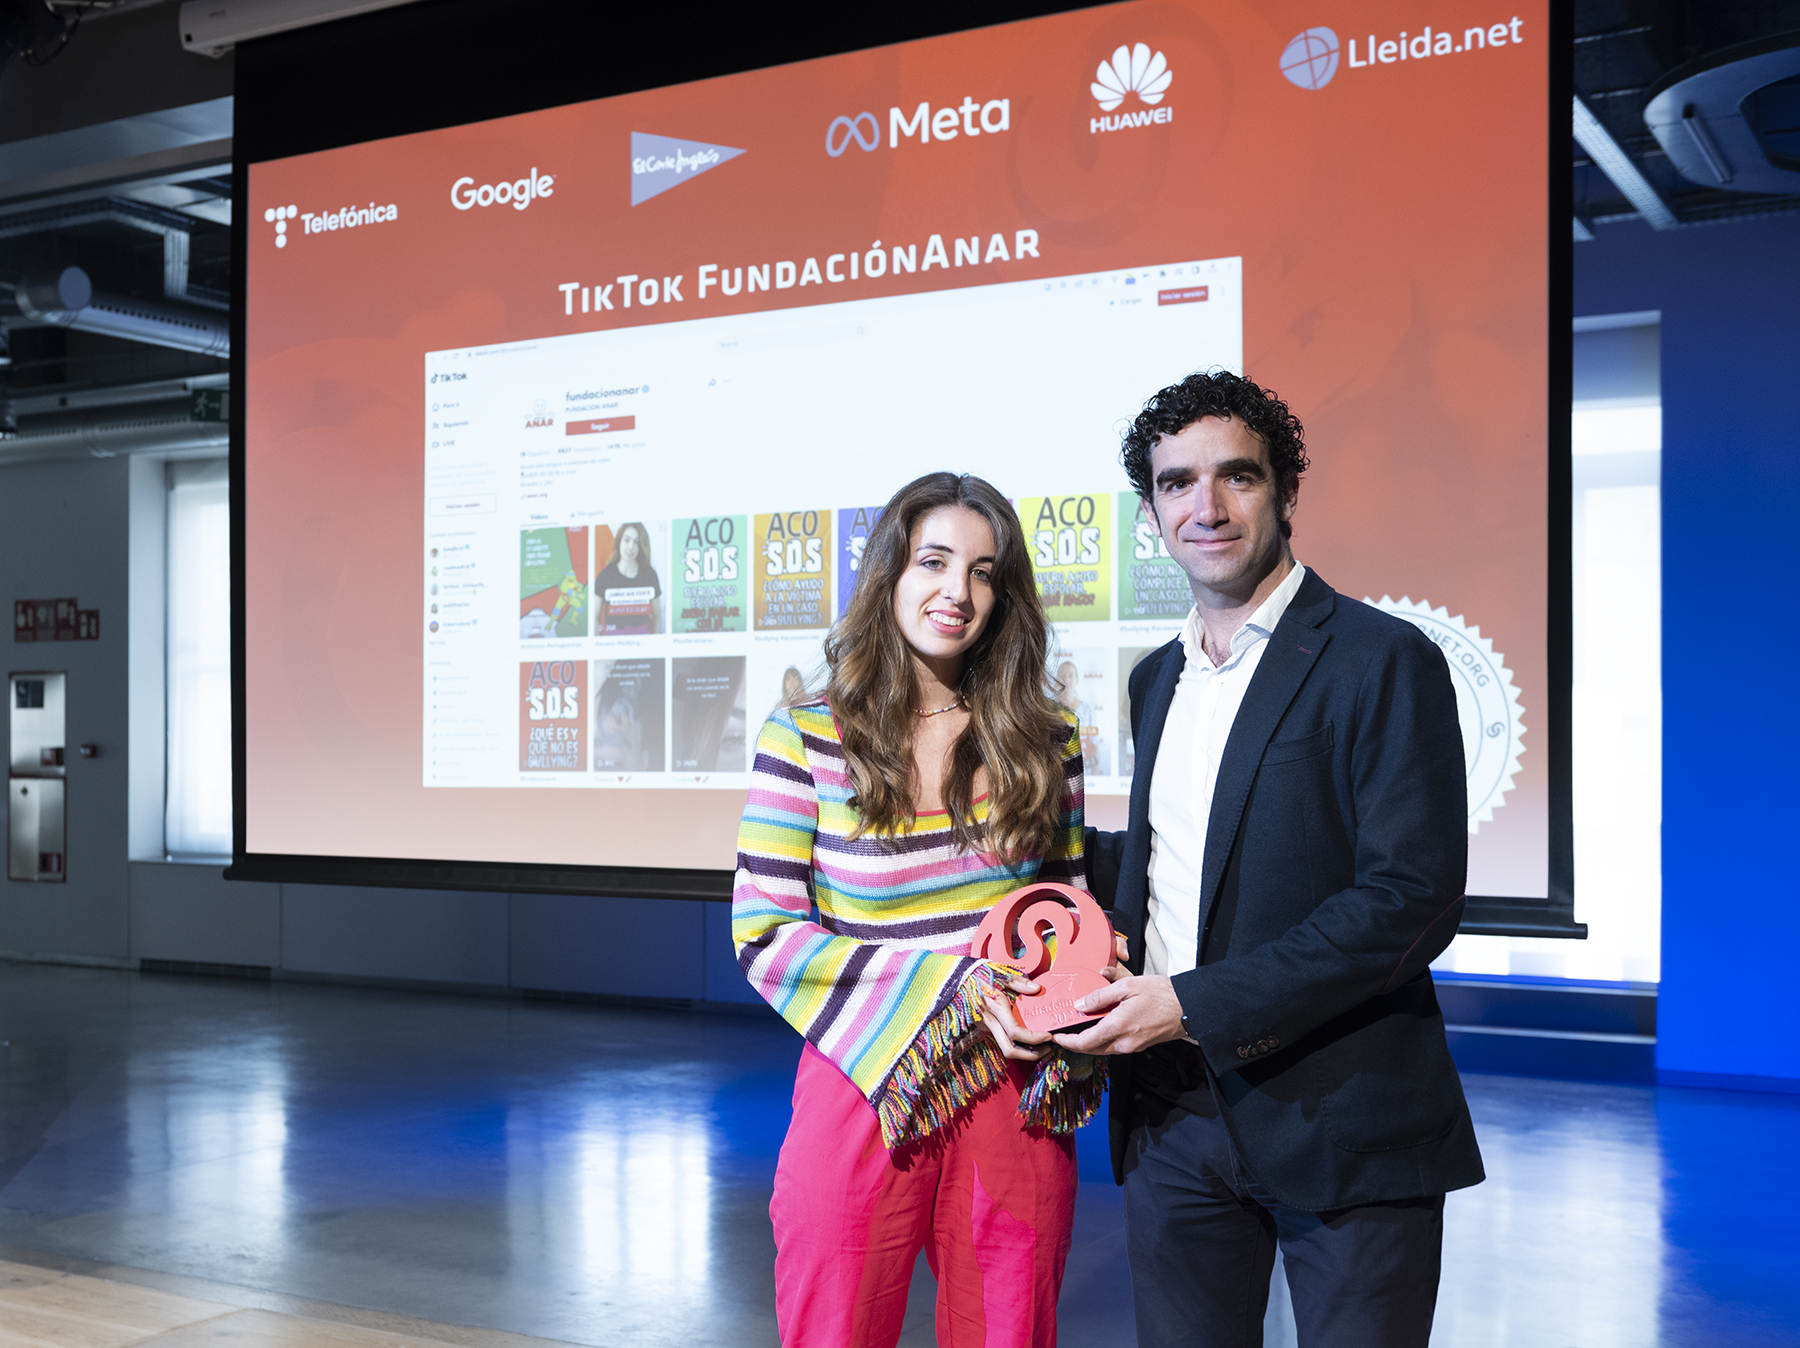 La Fundación ANAR, ganadora de los Premios de Internet